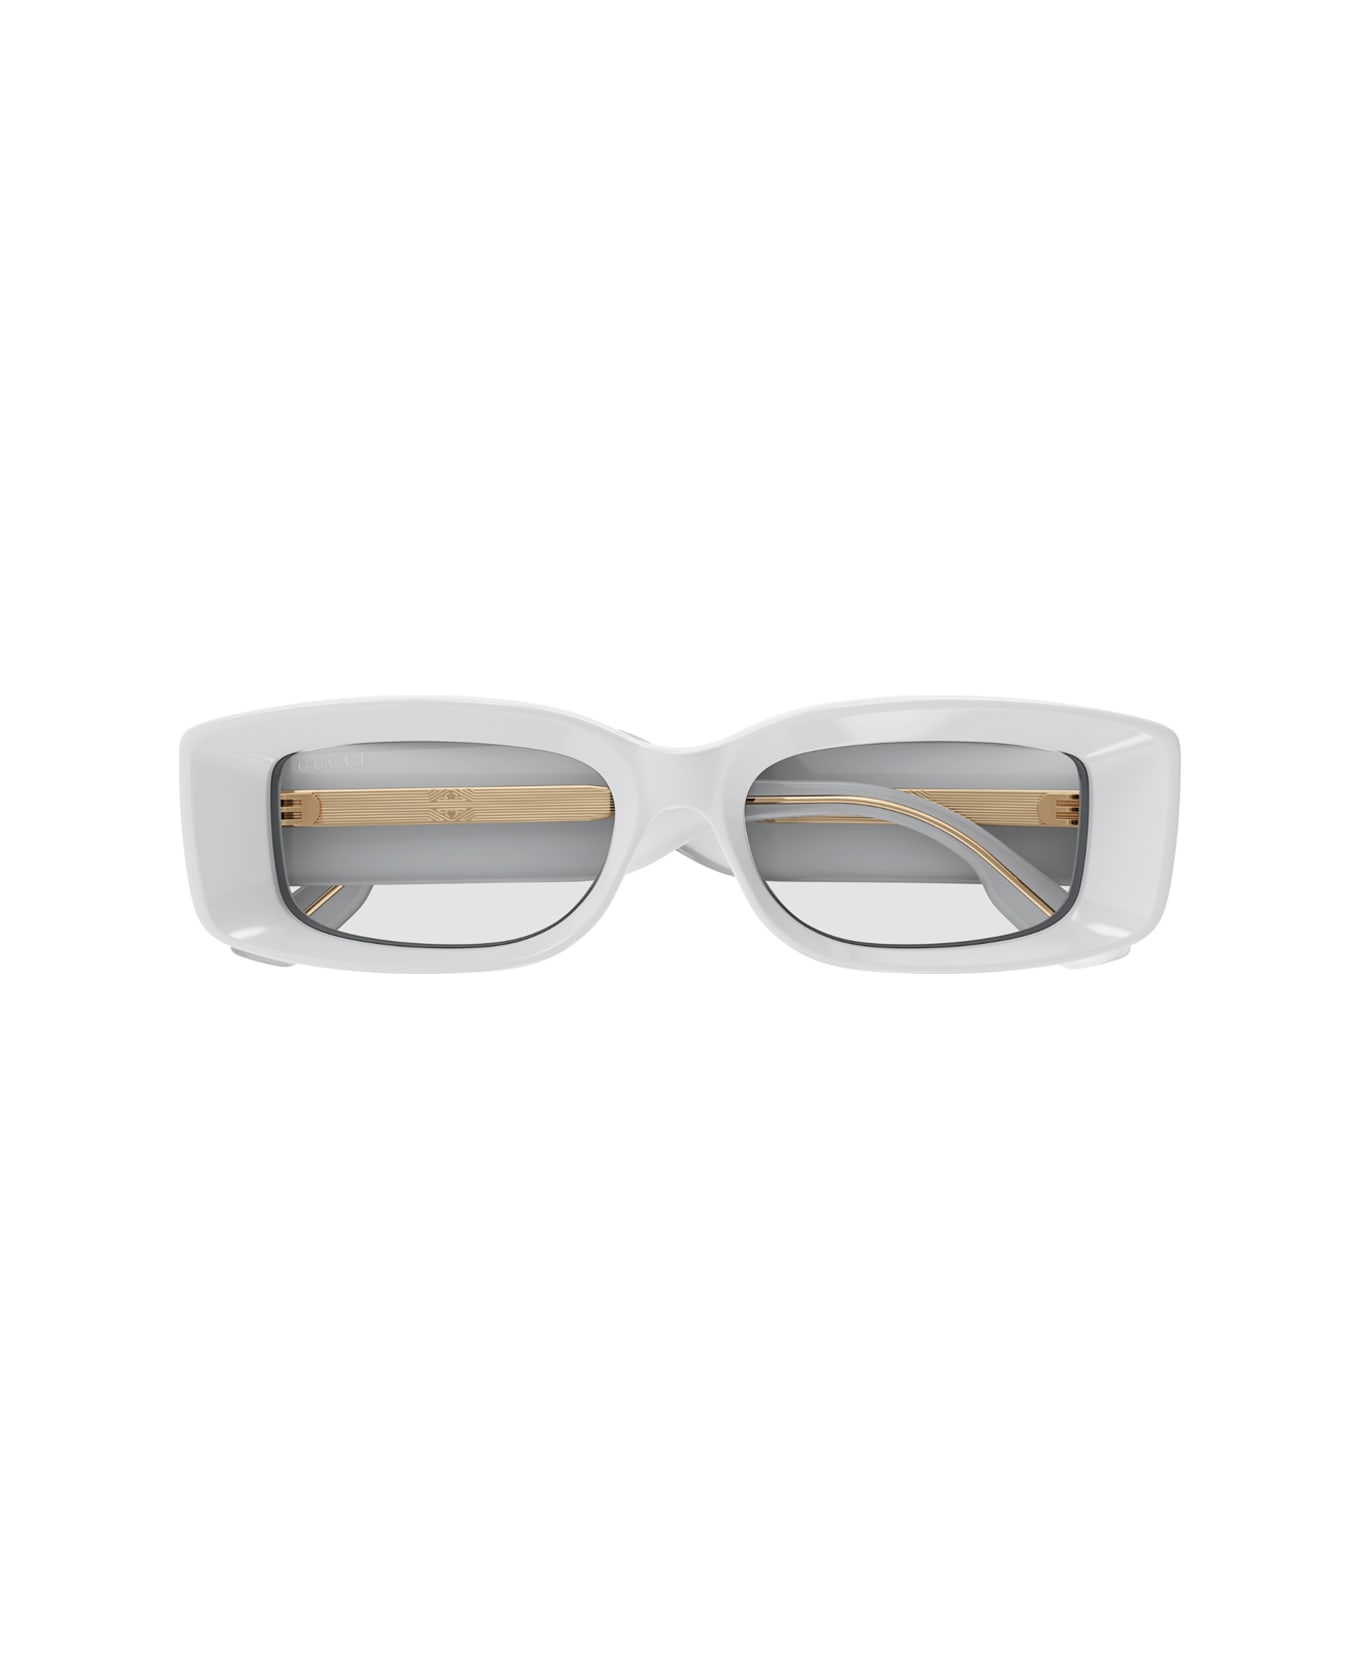 Gucci Eyewear Gg1528s 005 Sunglasses - Grigio サングラス